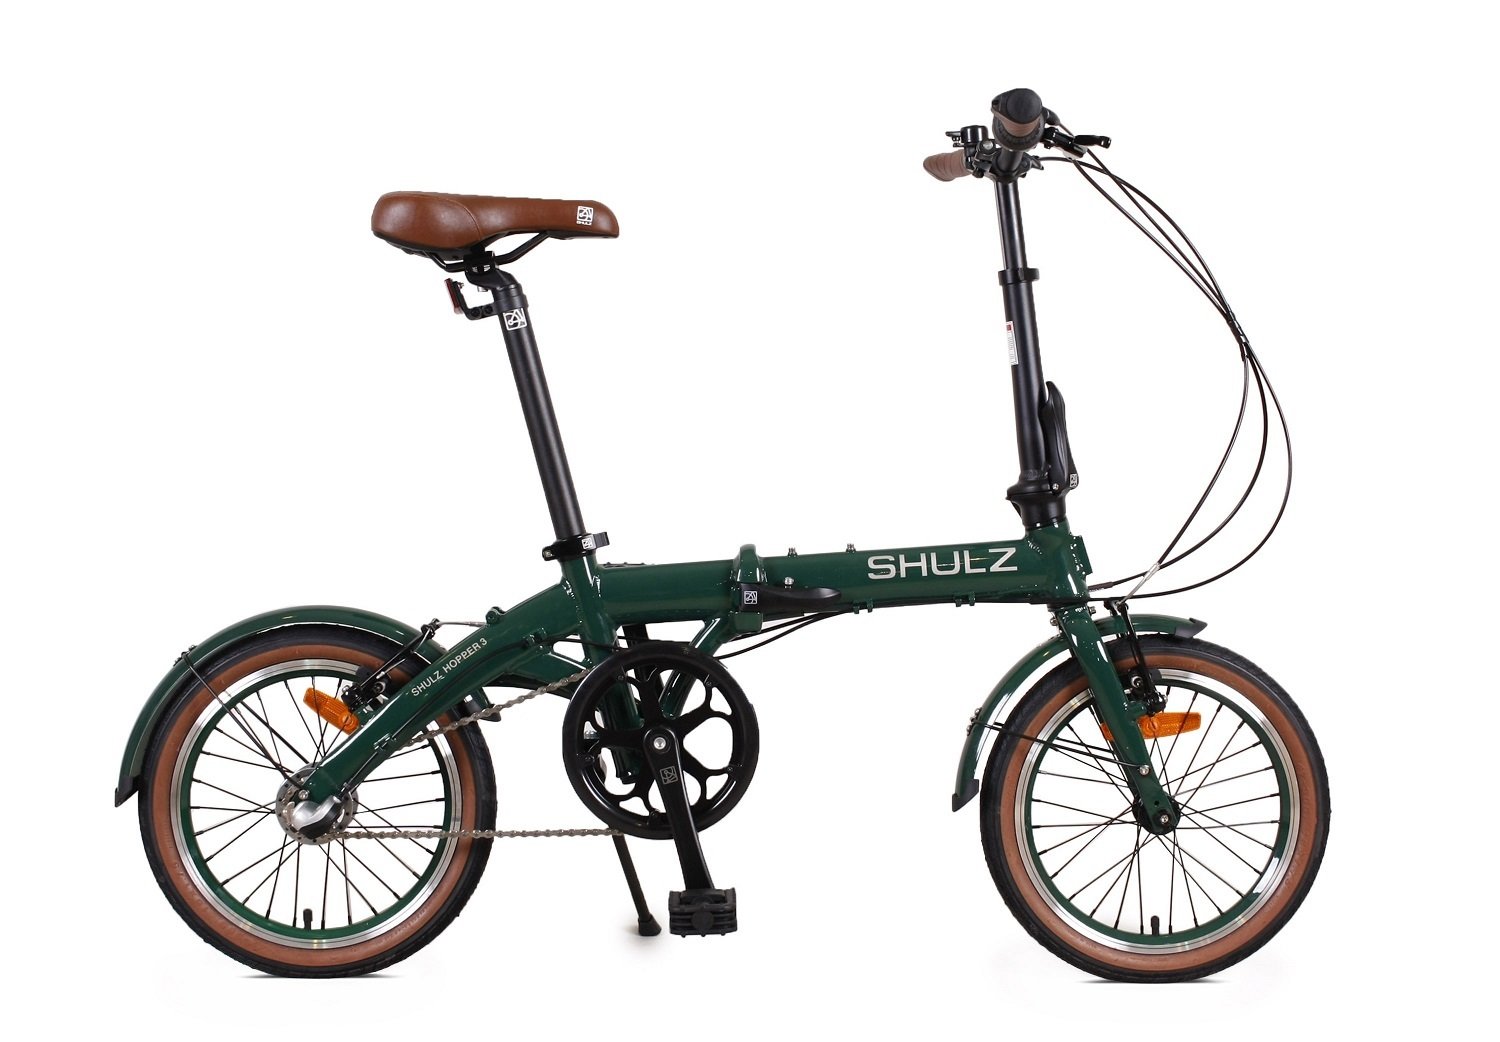 Складной велосипед SHULZ Hopper 3, PT-3435C, 2021, 2000008311656 журнал звезда 1 2021